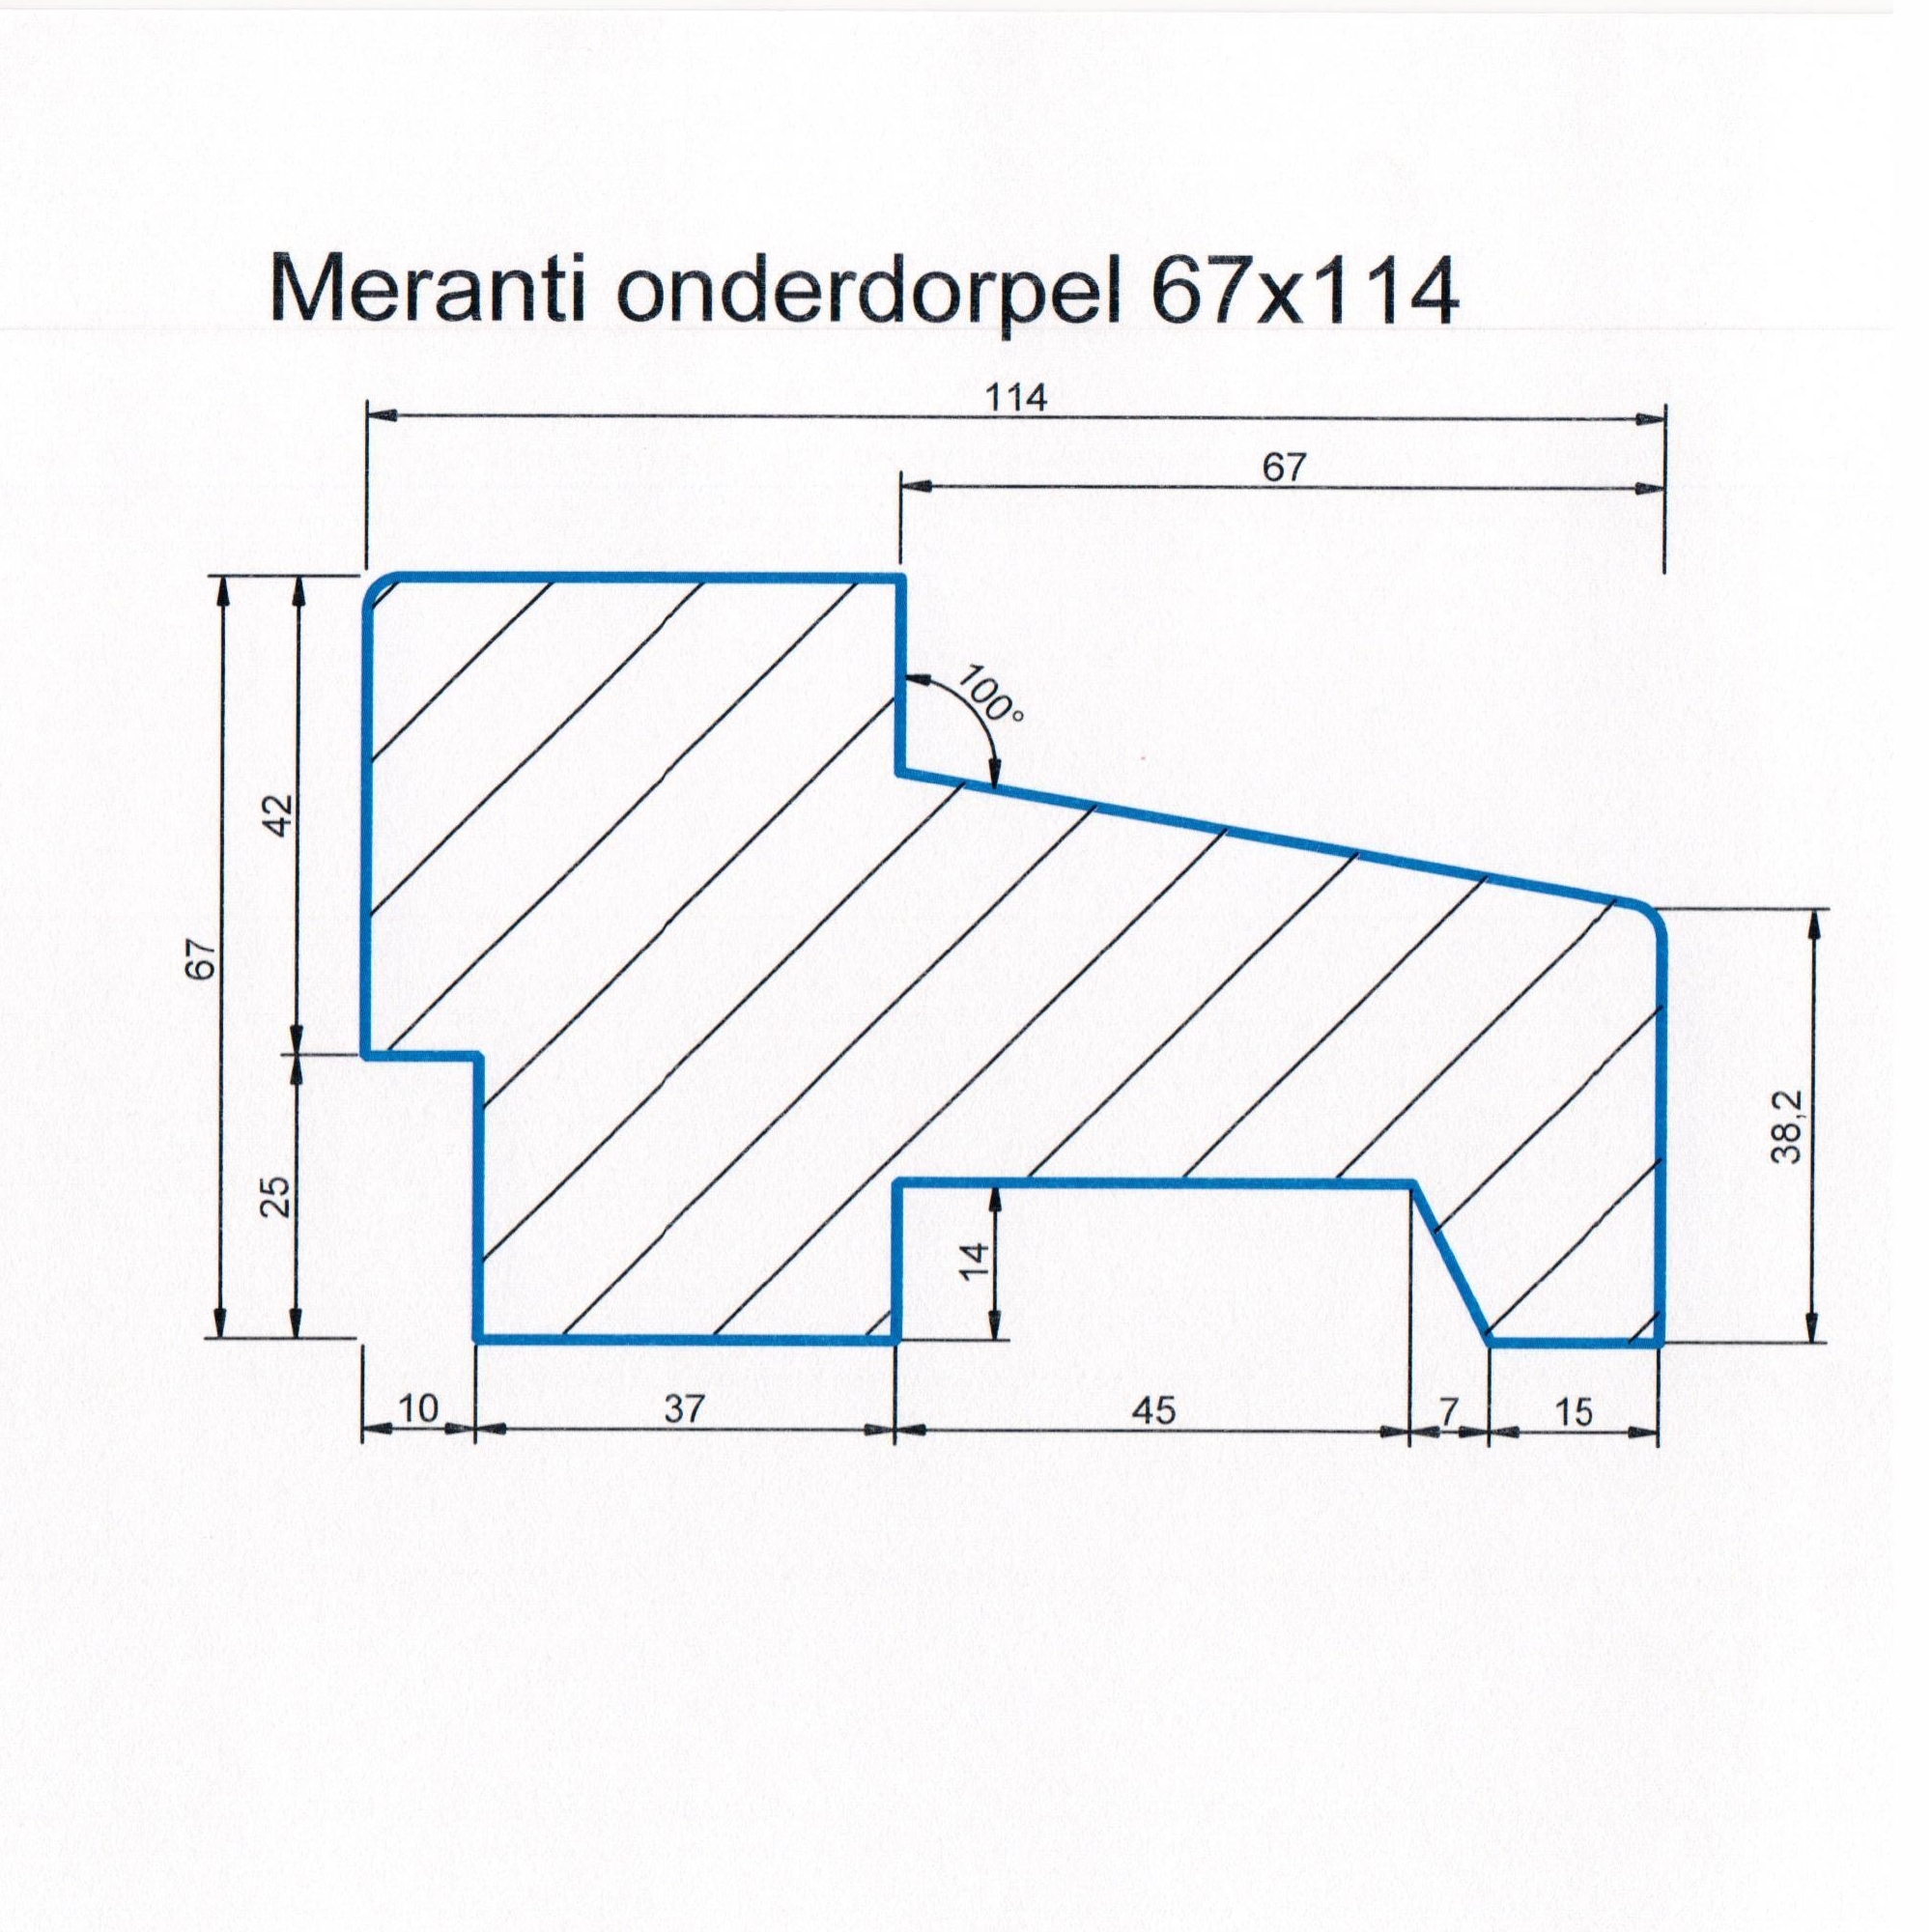 Meranti 67x114 kozijnhout onderdorpel L=3050 mm